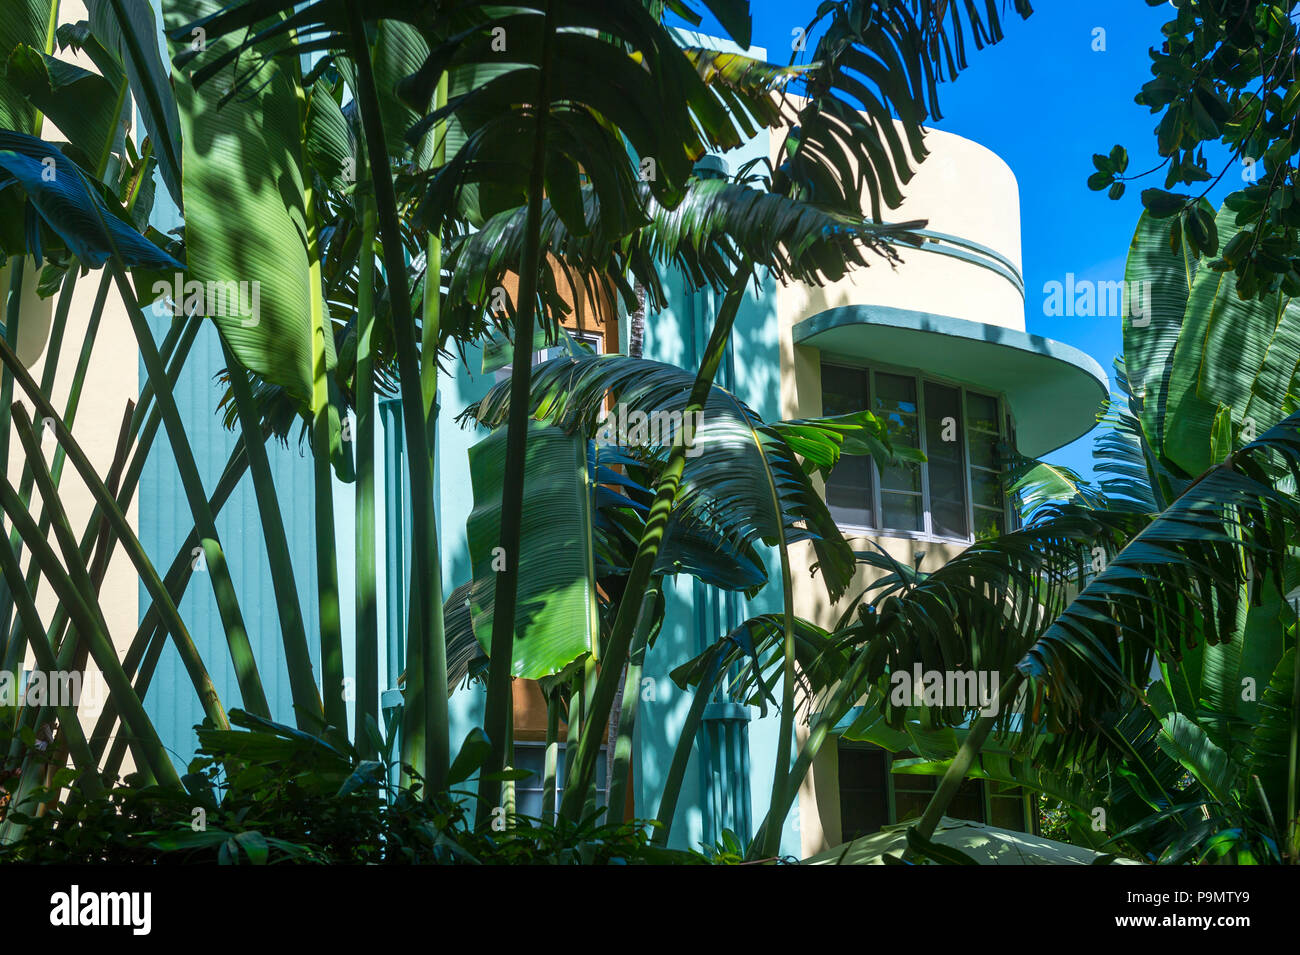 Typische pastell-colorfed 1930s Art Deco Architektur durch üppige dichten Palm Tree Laub in Miami, Florida gesehen Stockfoto